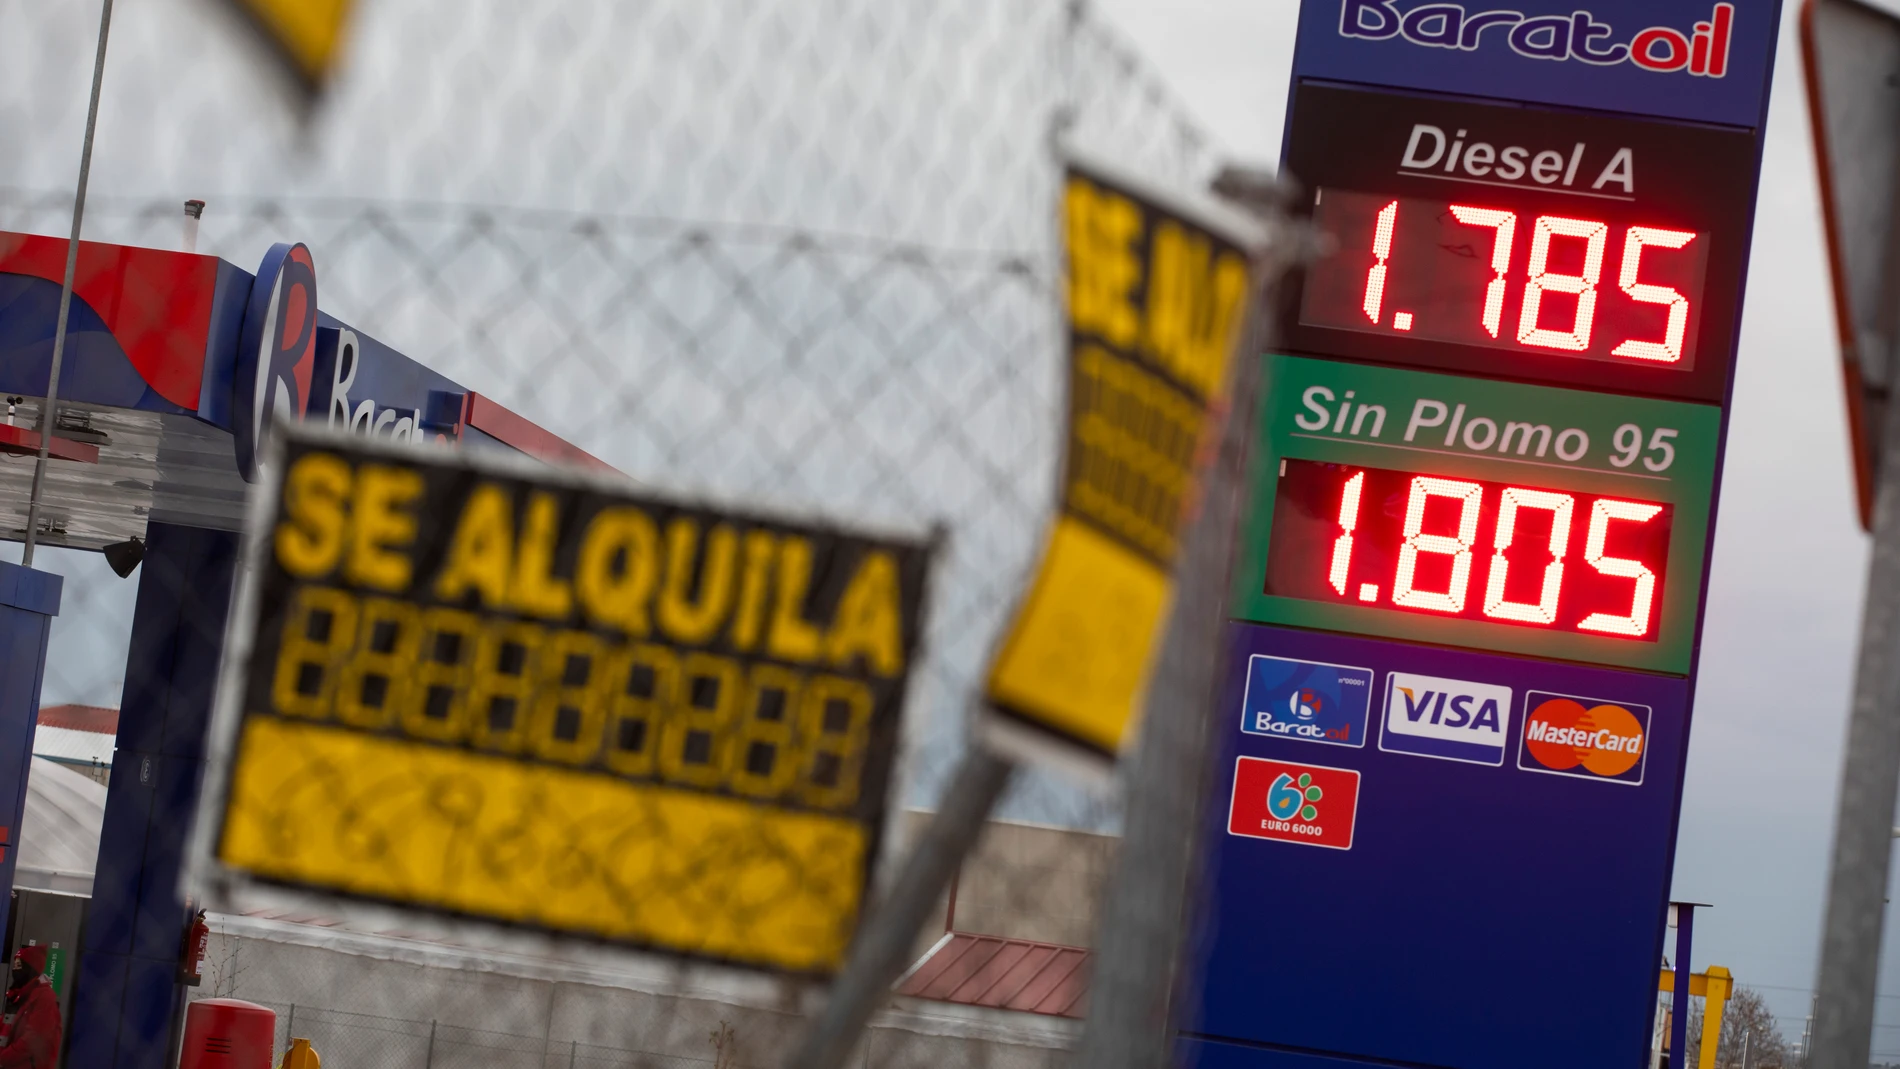 Precios de una gasolinera de Parla (Madrid)